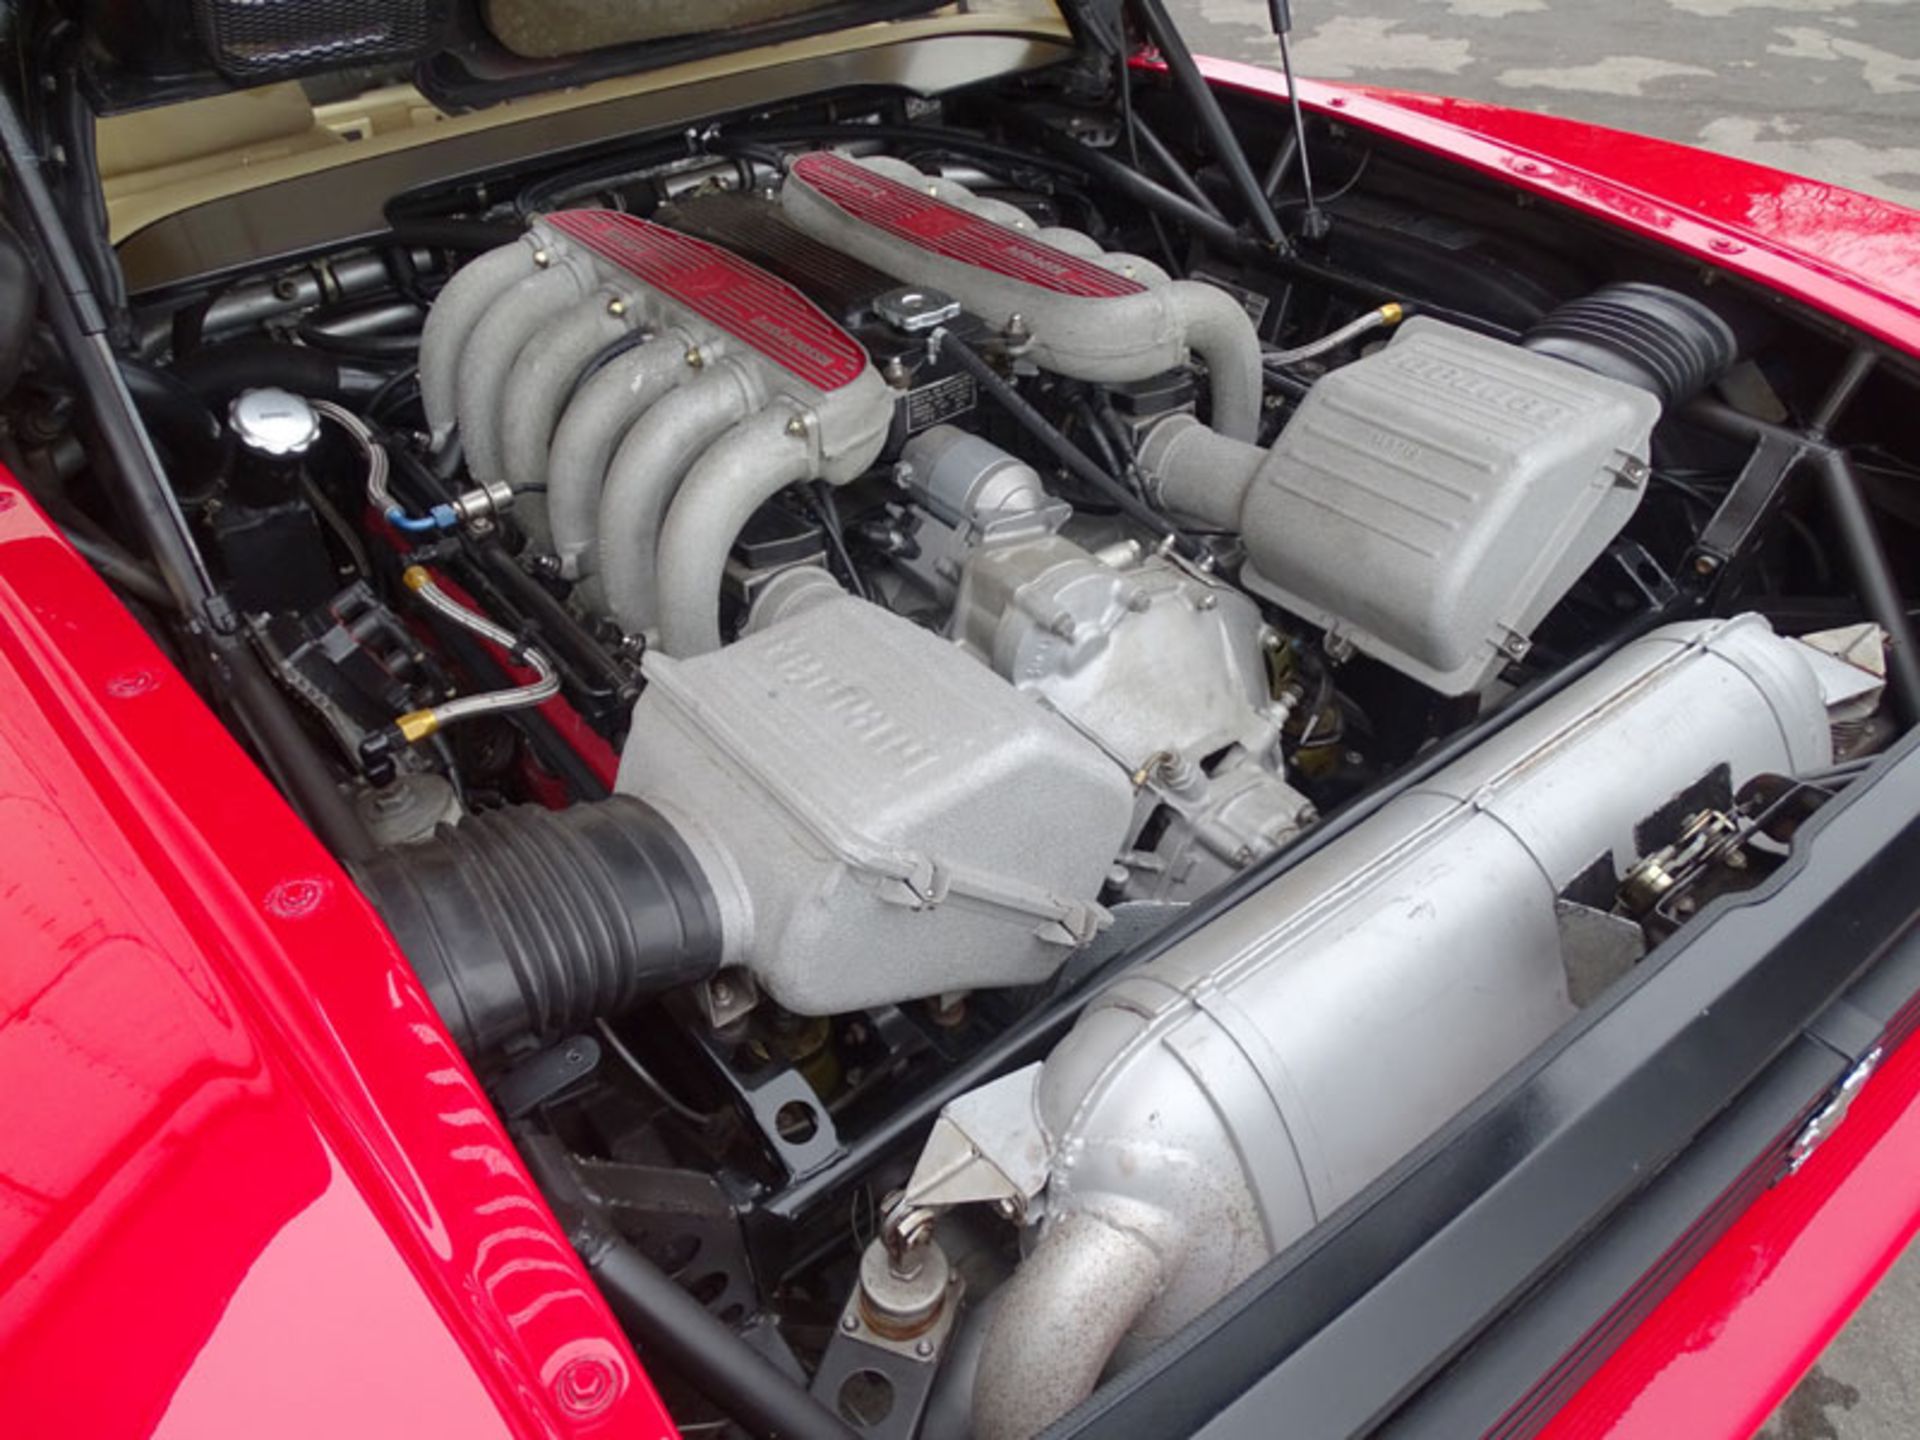 1993 Ferrari 512 TR - Image 10 of 13